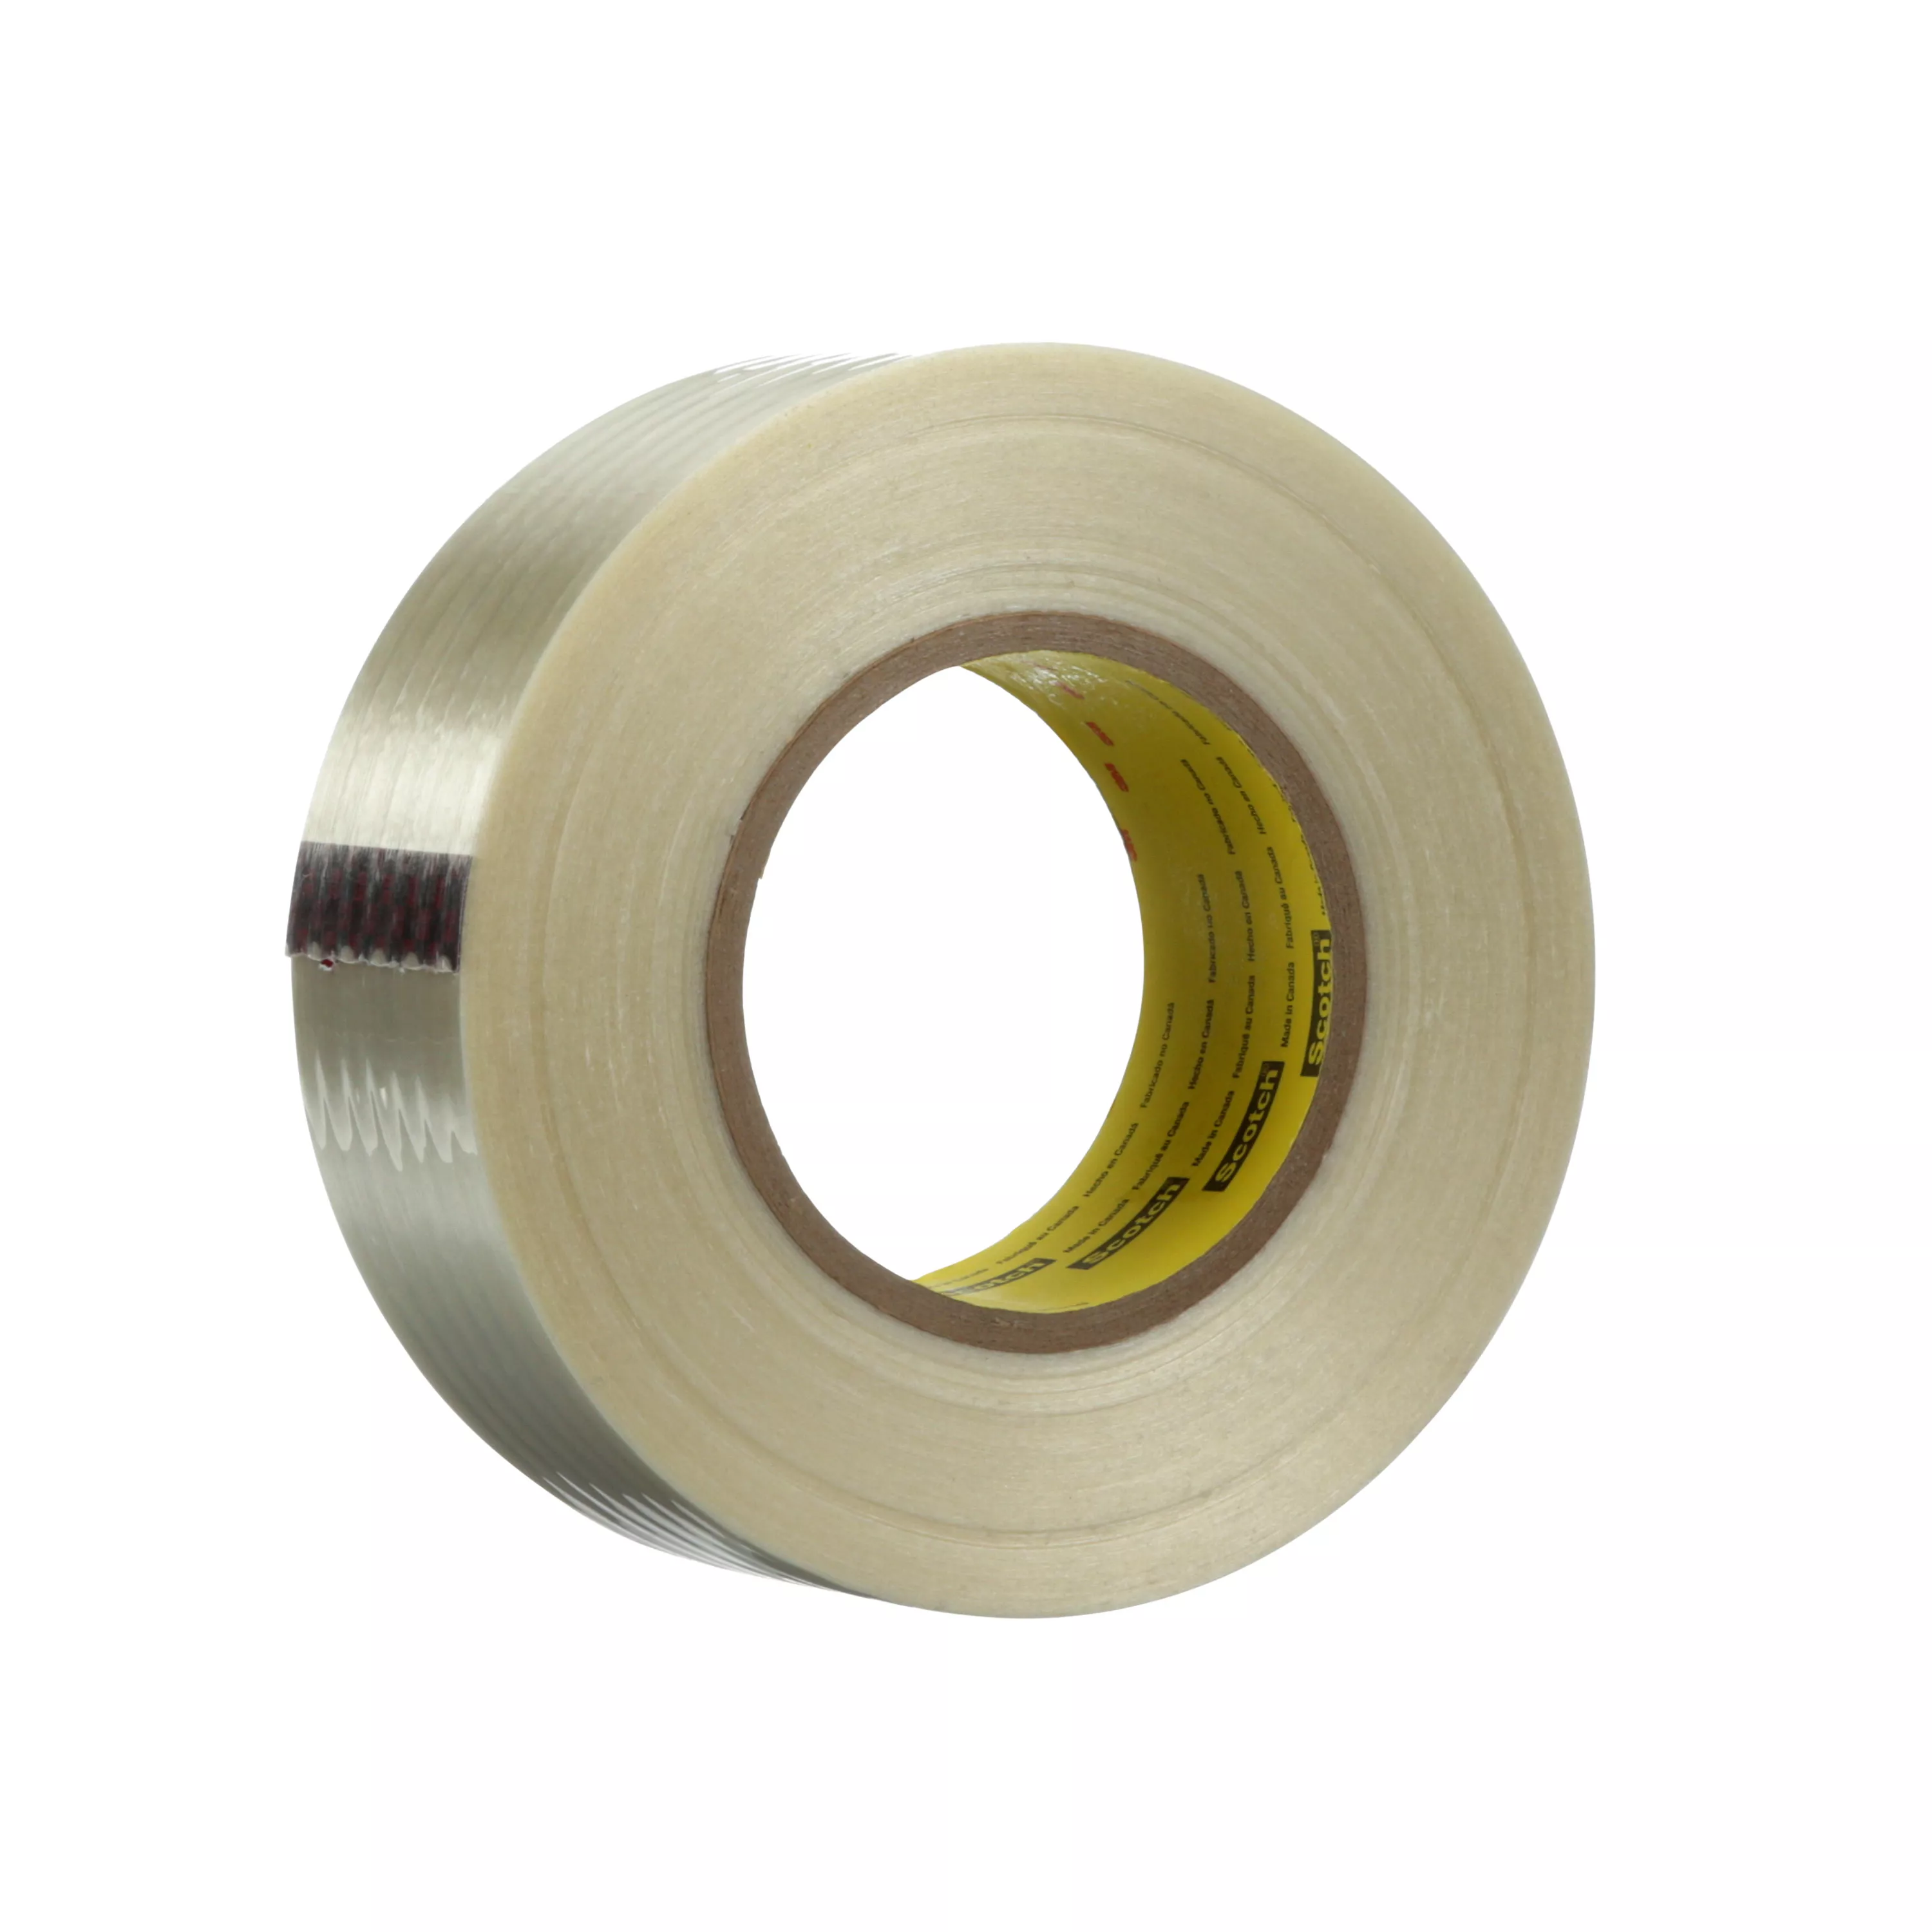 Scotch® Filament Tape 8809, Clear, 48 mm x 55 m, 7.7 mil, 24 Roll/Case